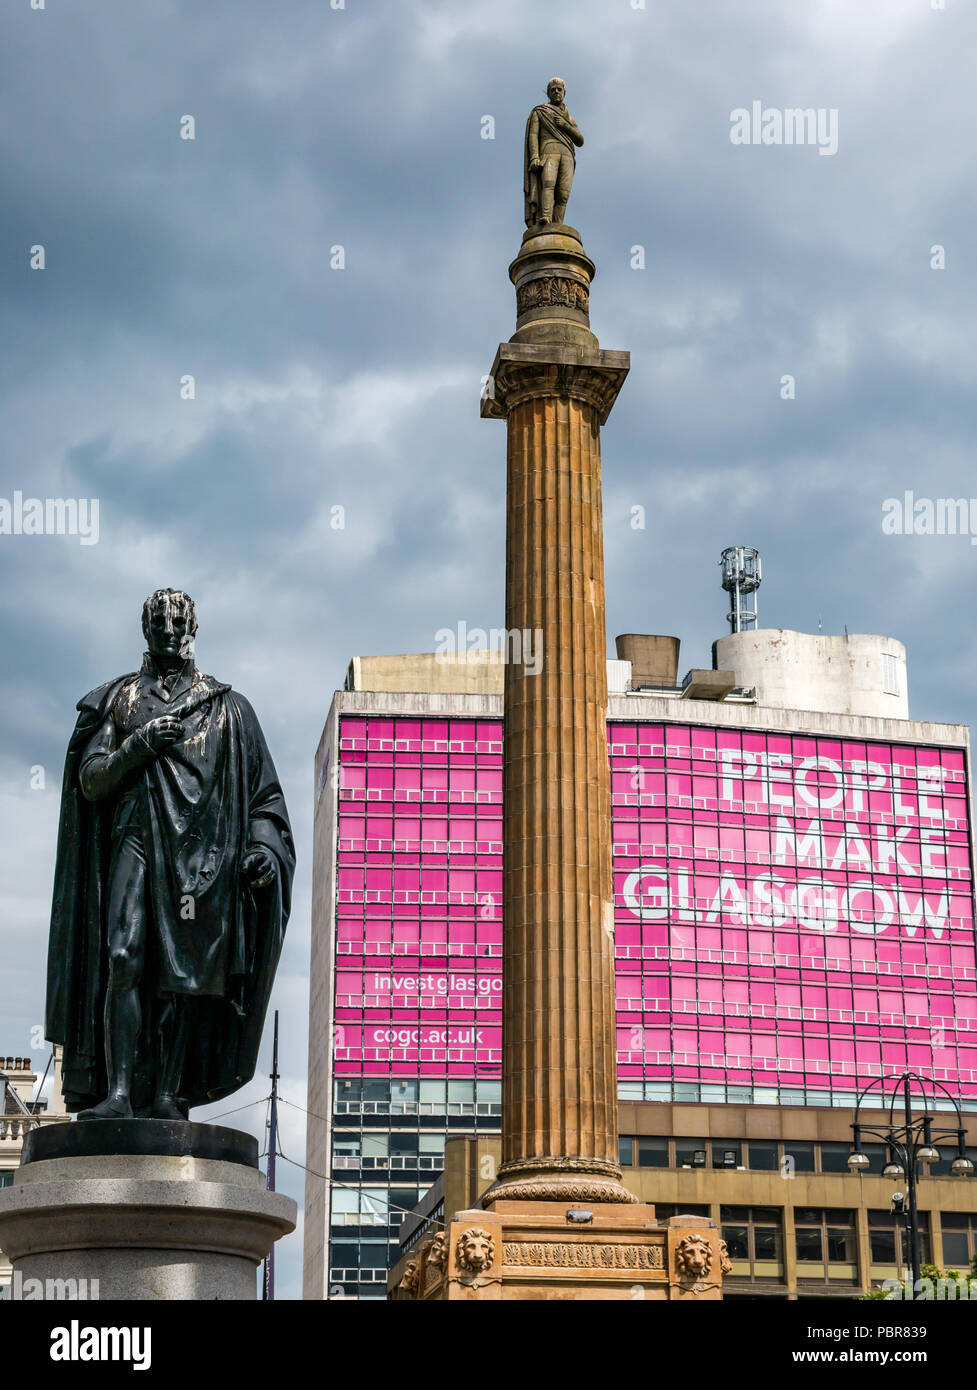 Sir John Moore Statue, Sir Walter Scott memorial Spalte und rosa Menschen machen Glasgow Anzeige und stürmischen Himmel, George Square, Glasgow, Schottland, Großbritannien Stockfoto